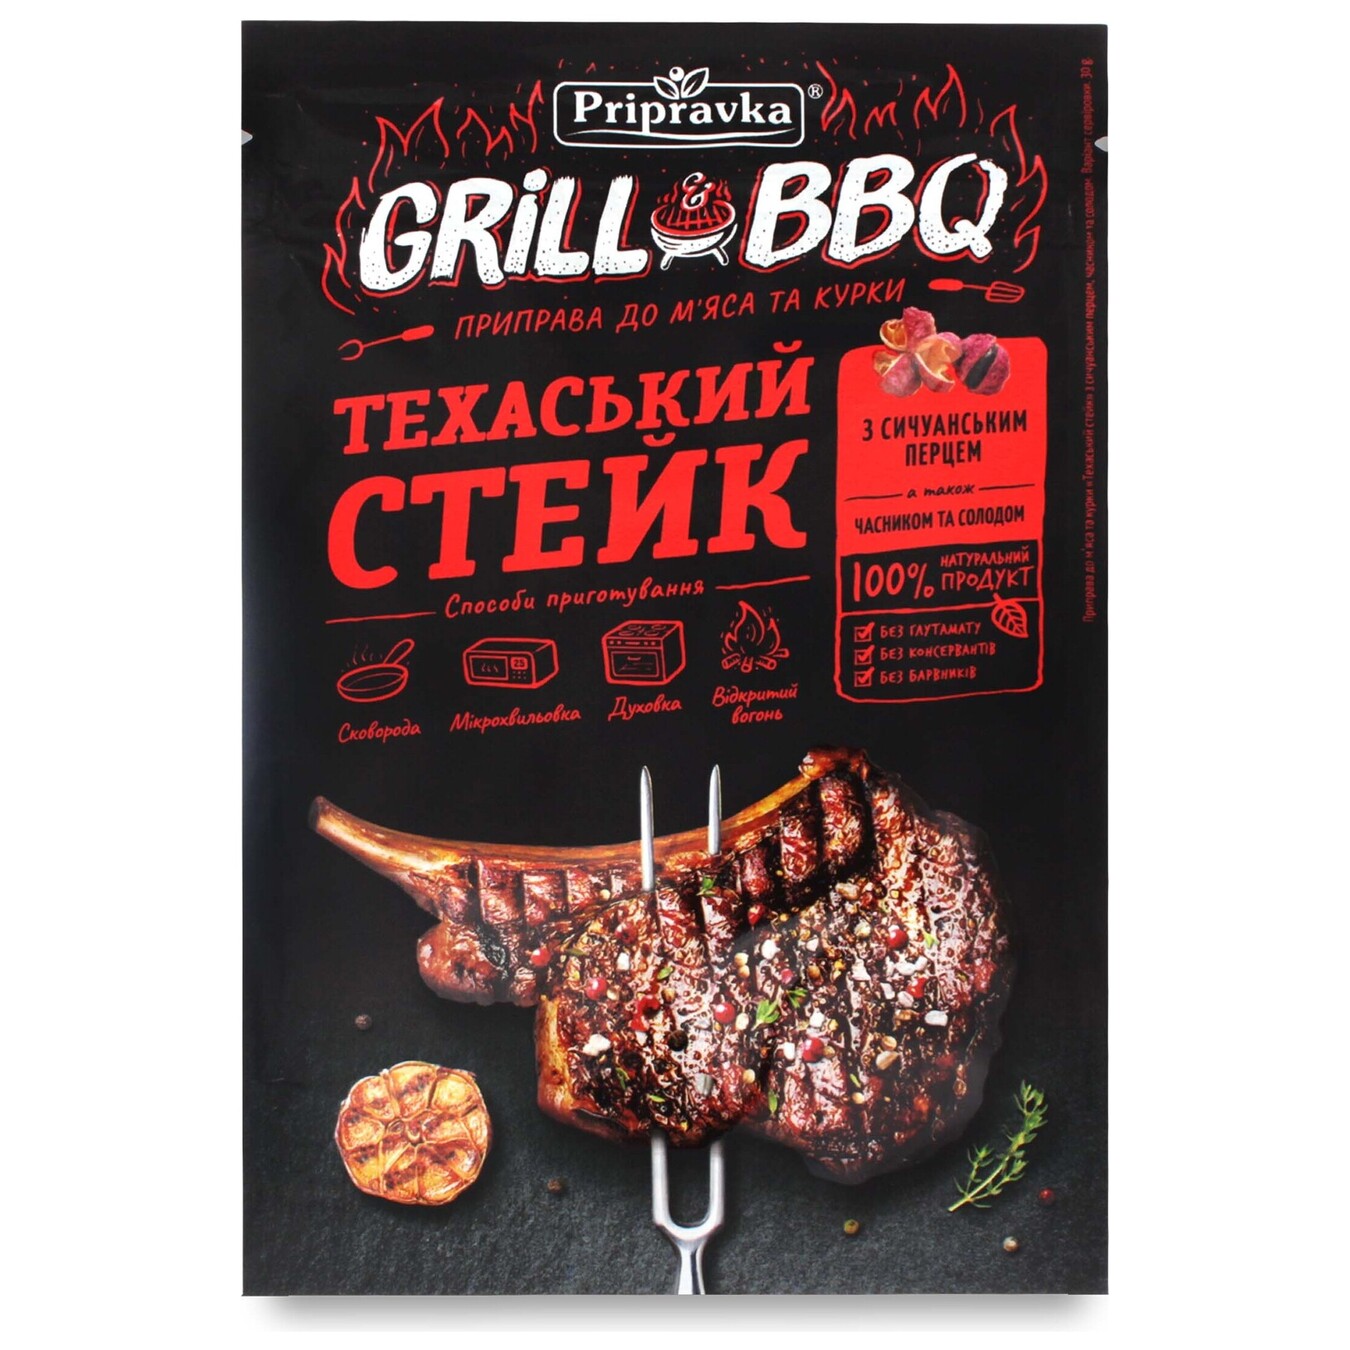 Приправа Pripravka Grill & BBQ для м'яса і курки Техаський стейк з сичуанськи перцем часником і солодом 30г